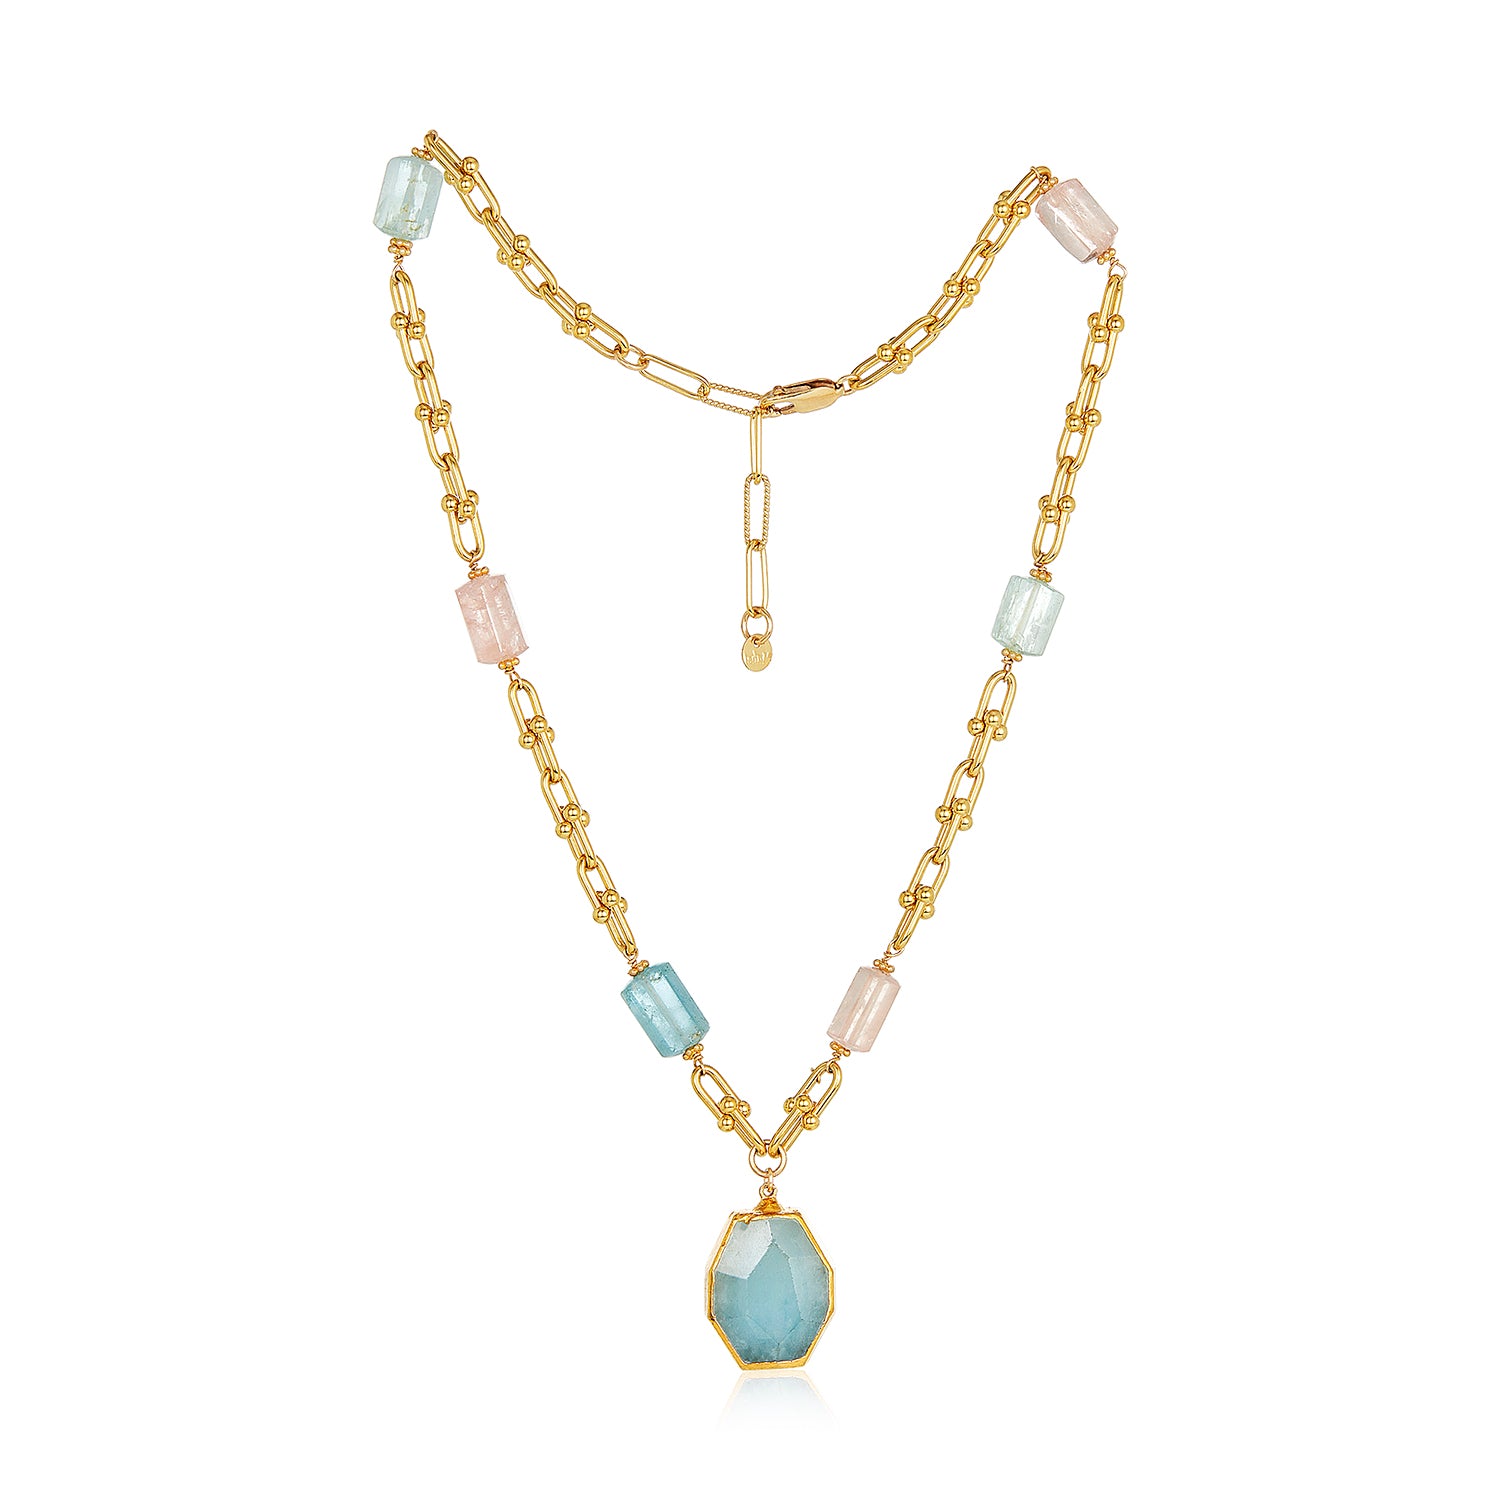 Emma Rainbow Aquamarine Necklace With Pendant